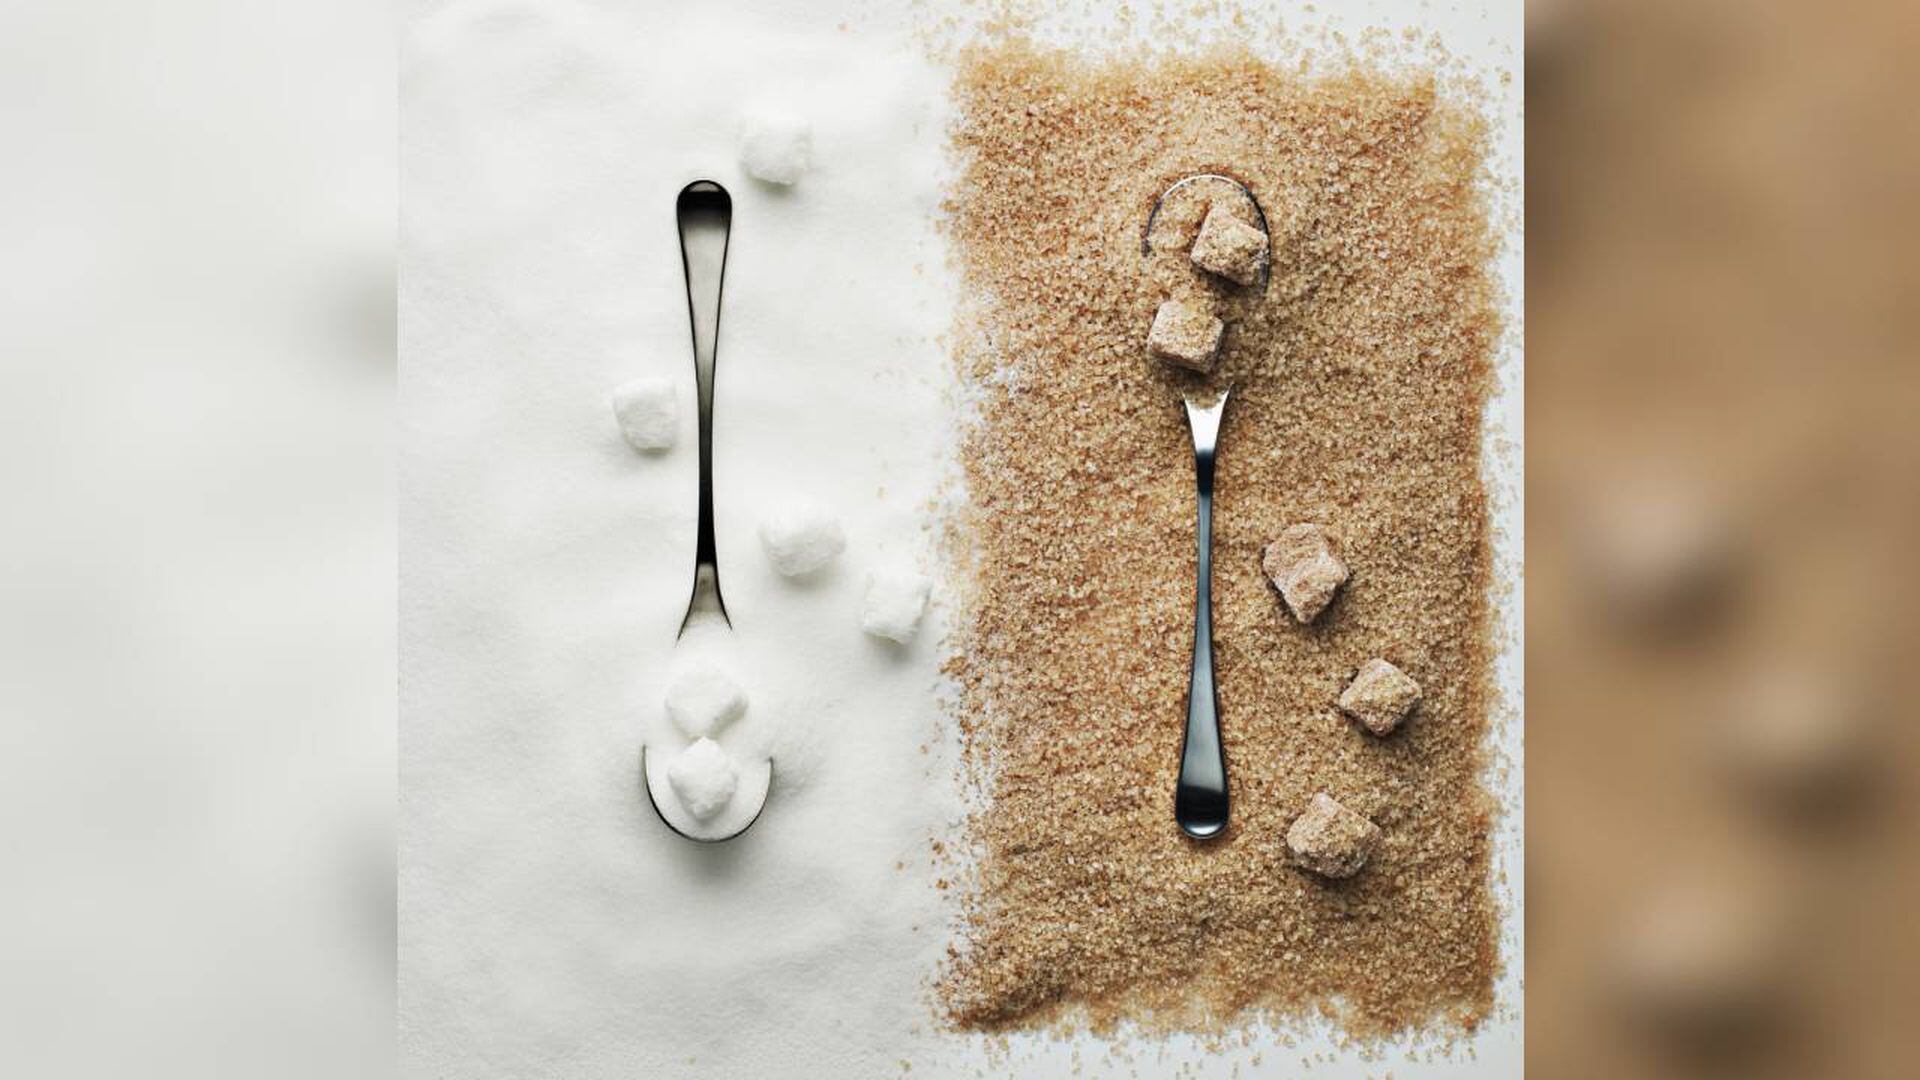 Azúcar moreno, ¿mejor que el azúcar blanco? — Cuaderno de Cultura Científica